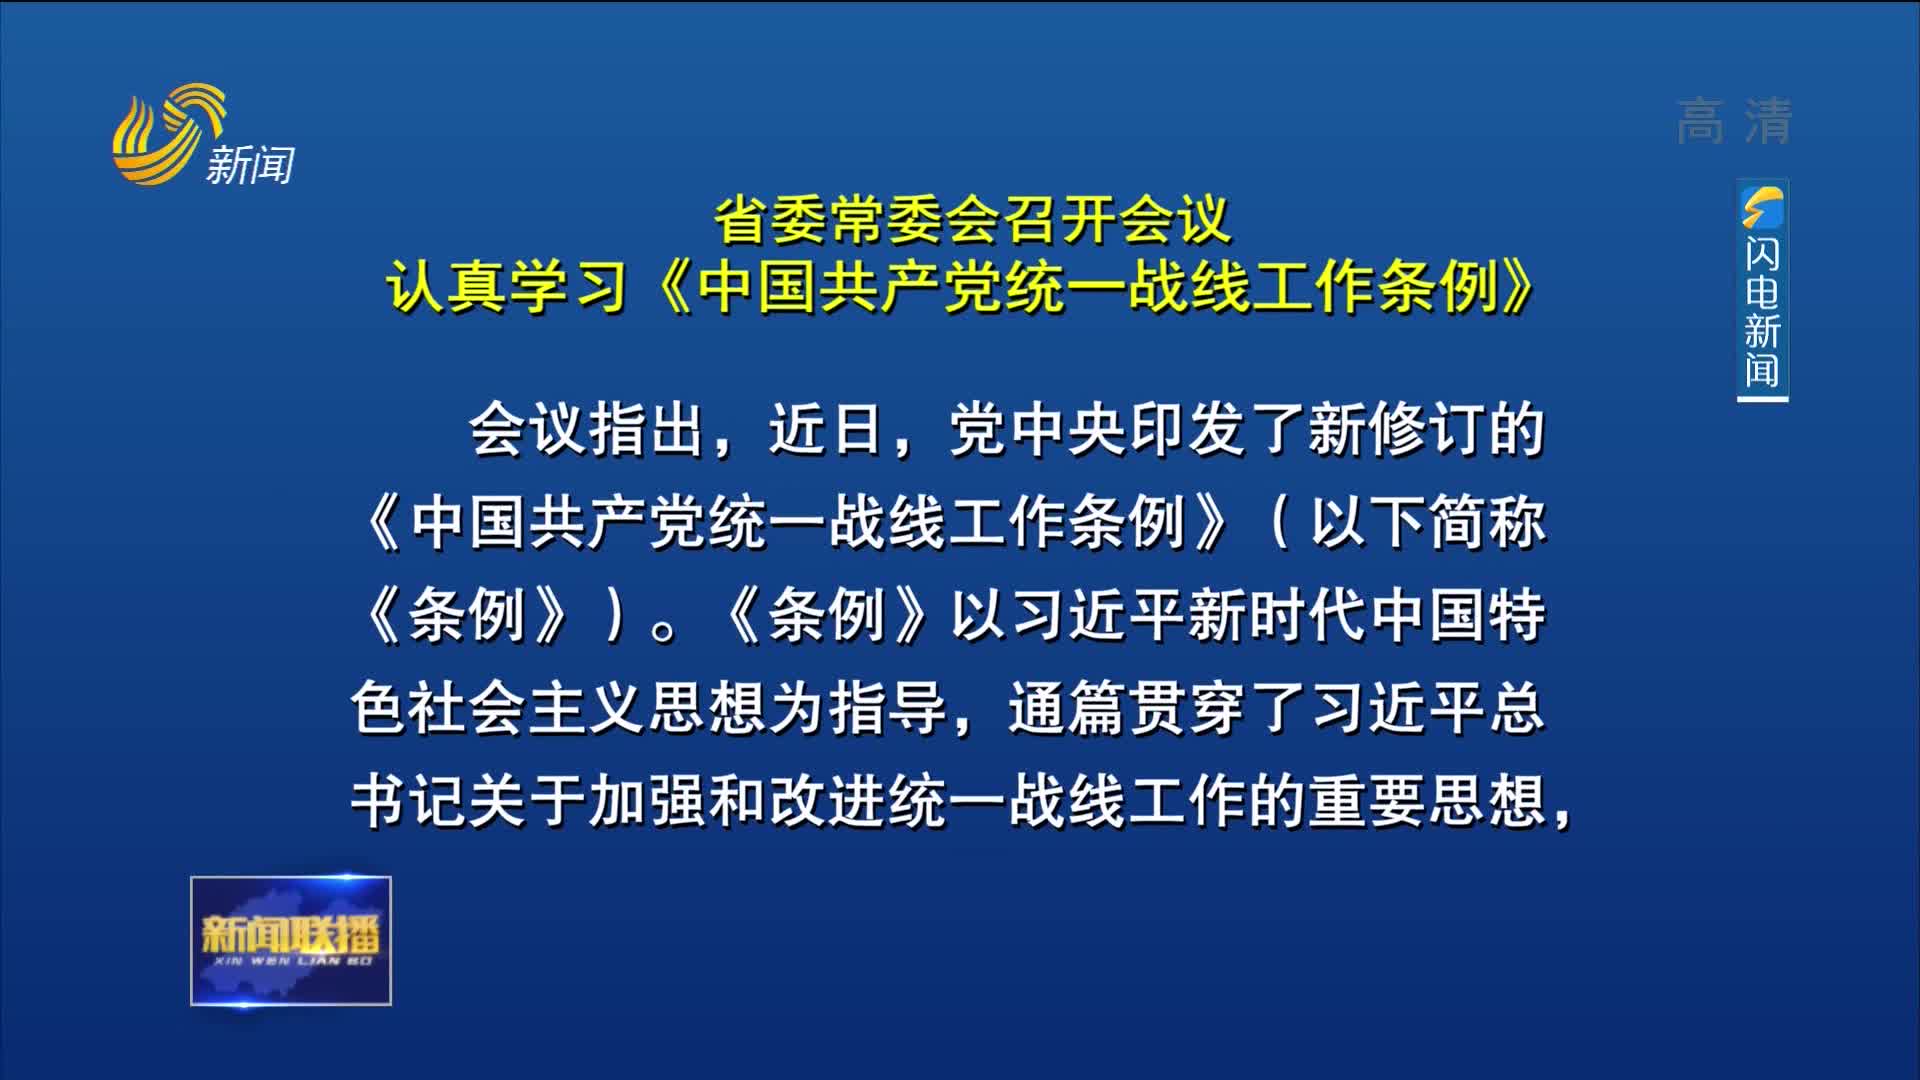 省委常委会召开会议 认真学习《中国共产党统一战线工作条例》